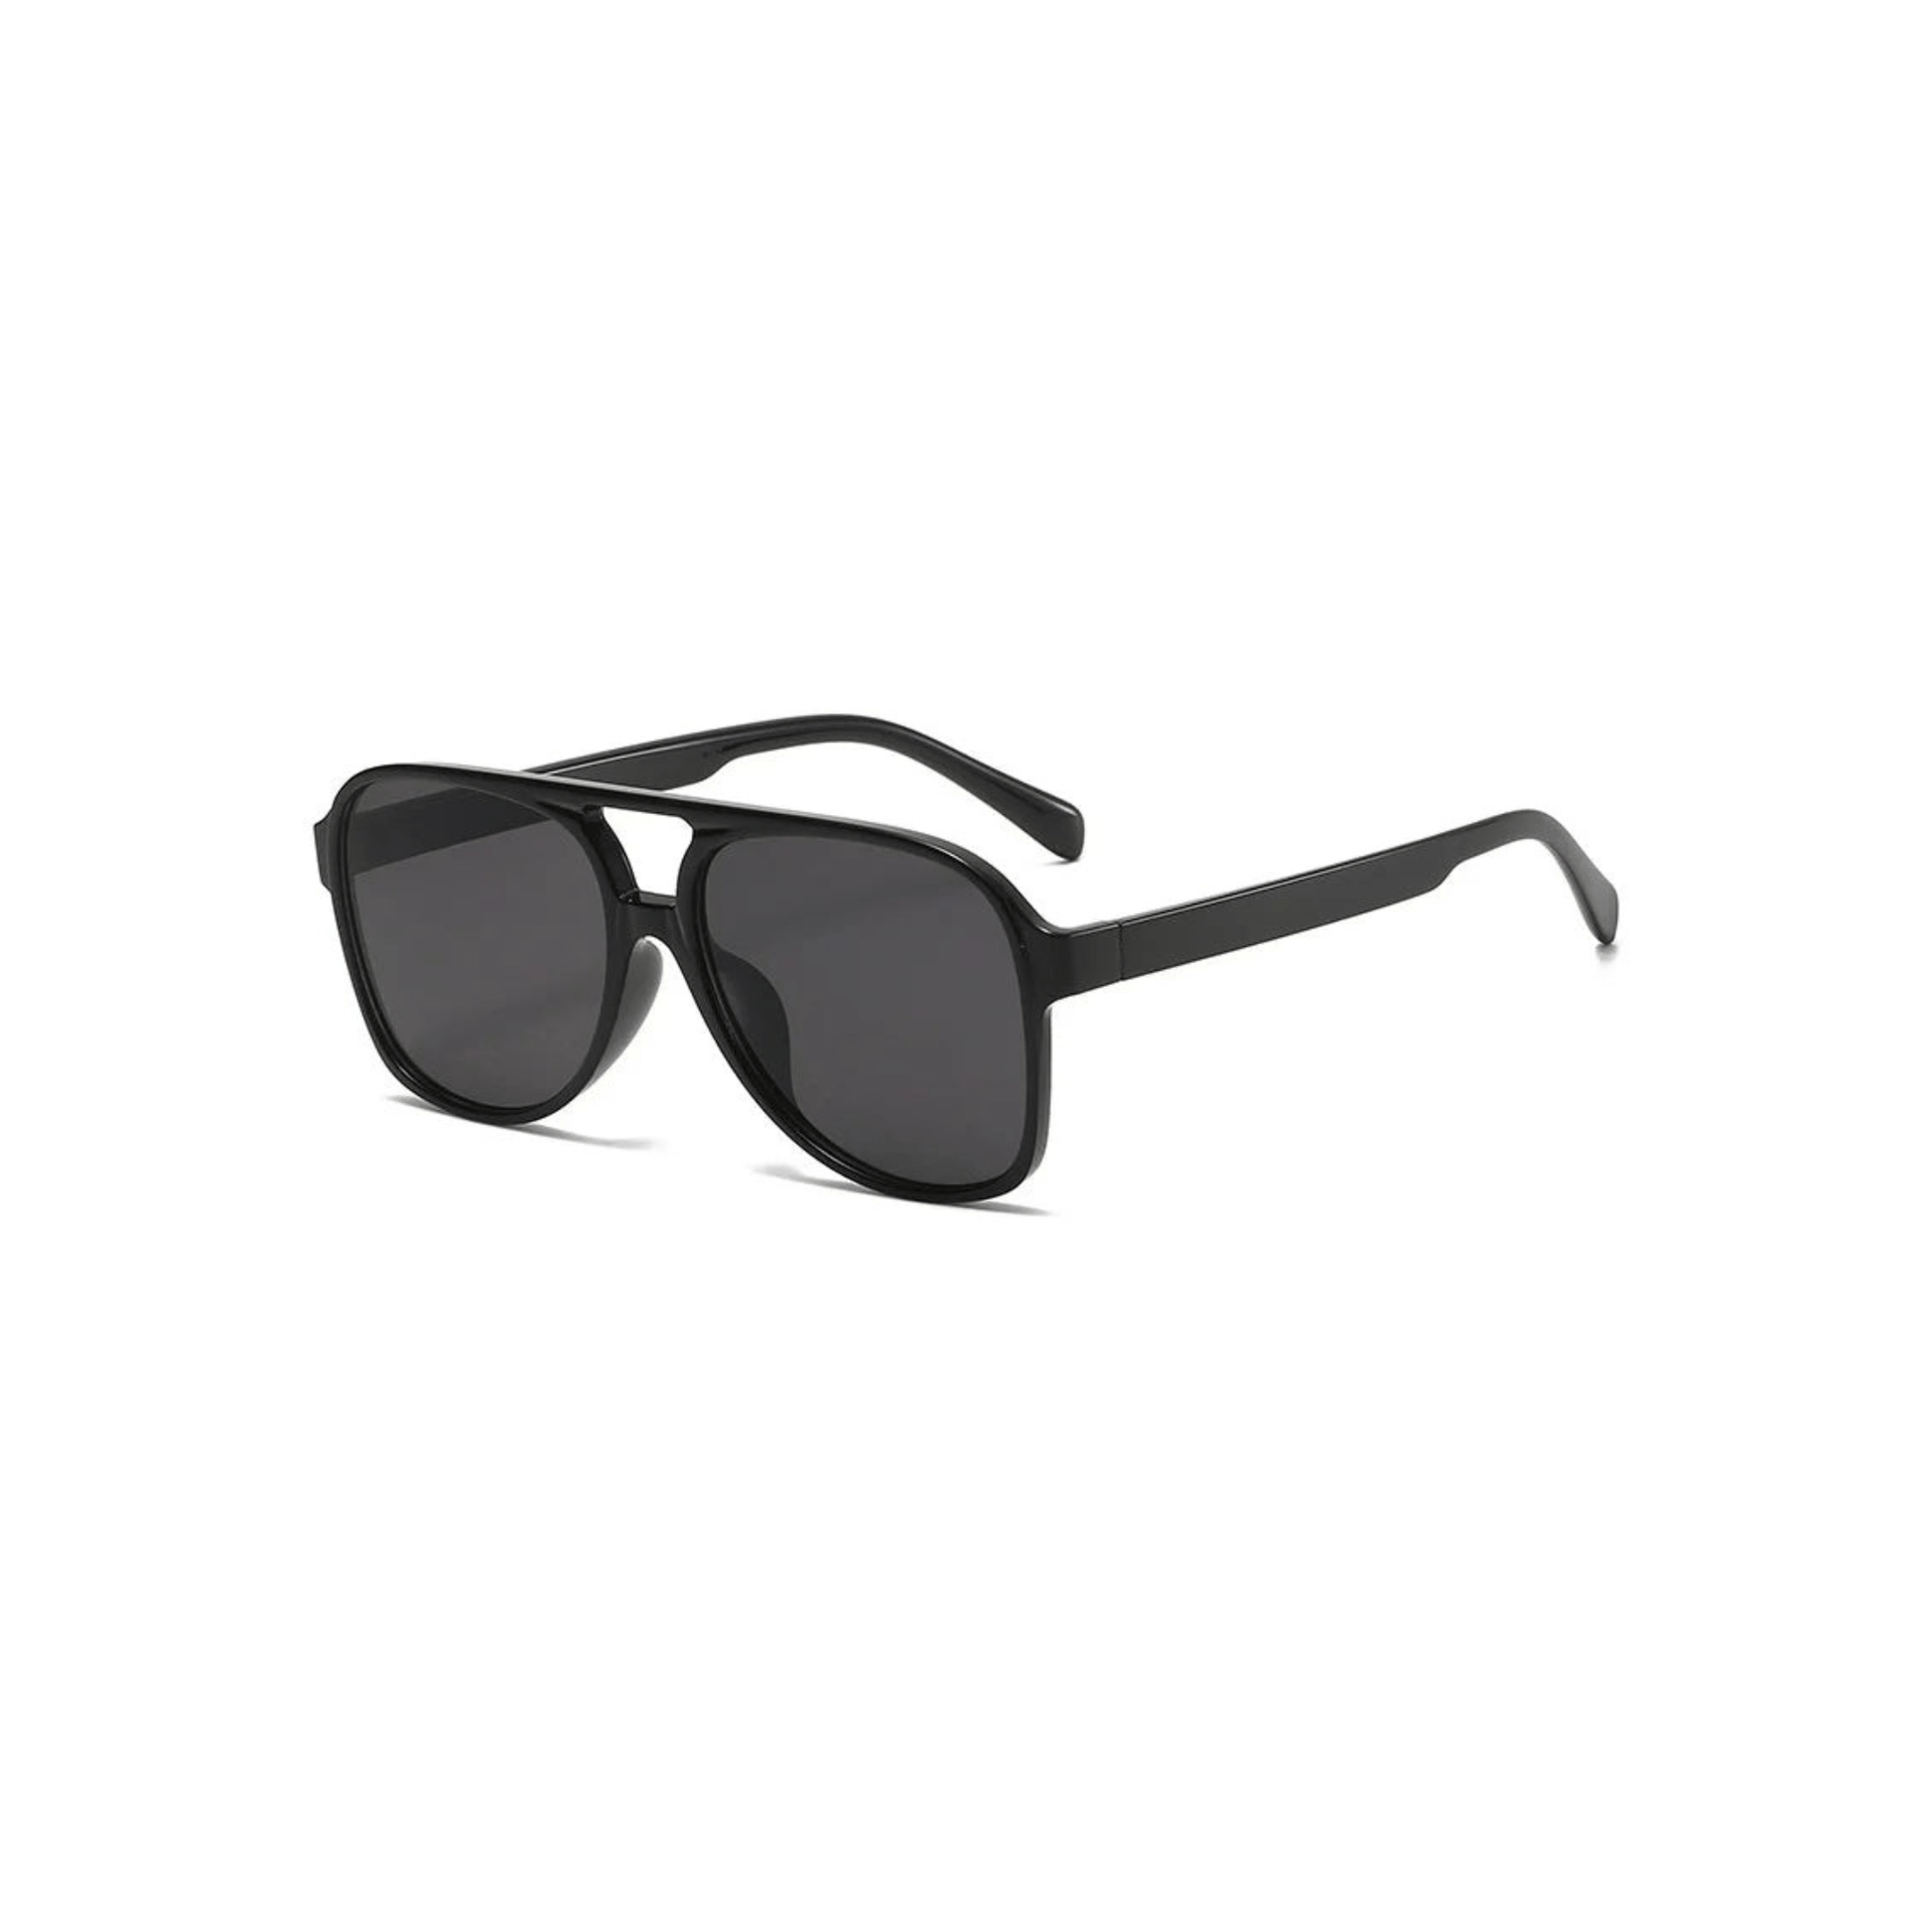 aviator sunglasses black lens black frame desert festival outfit